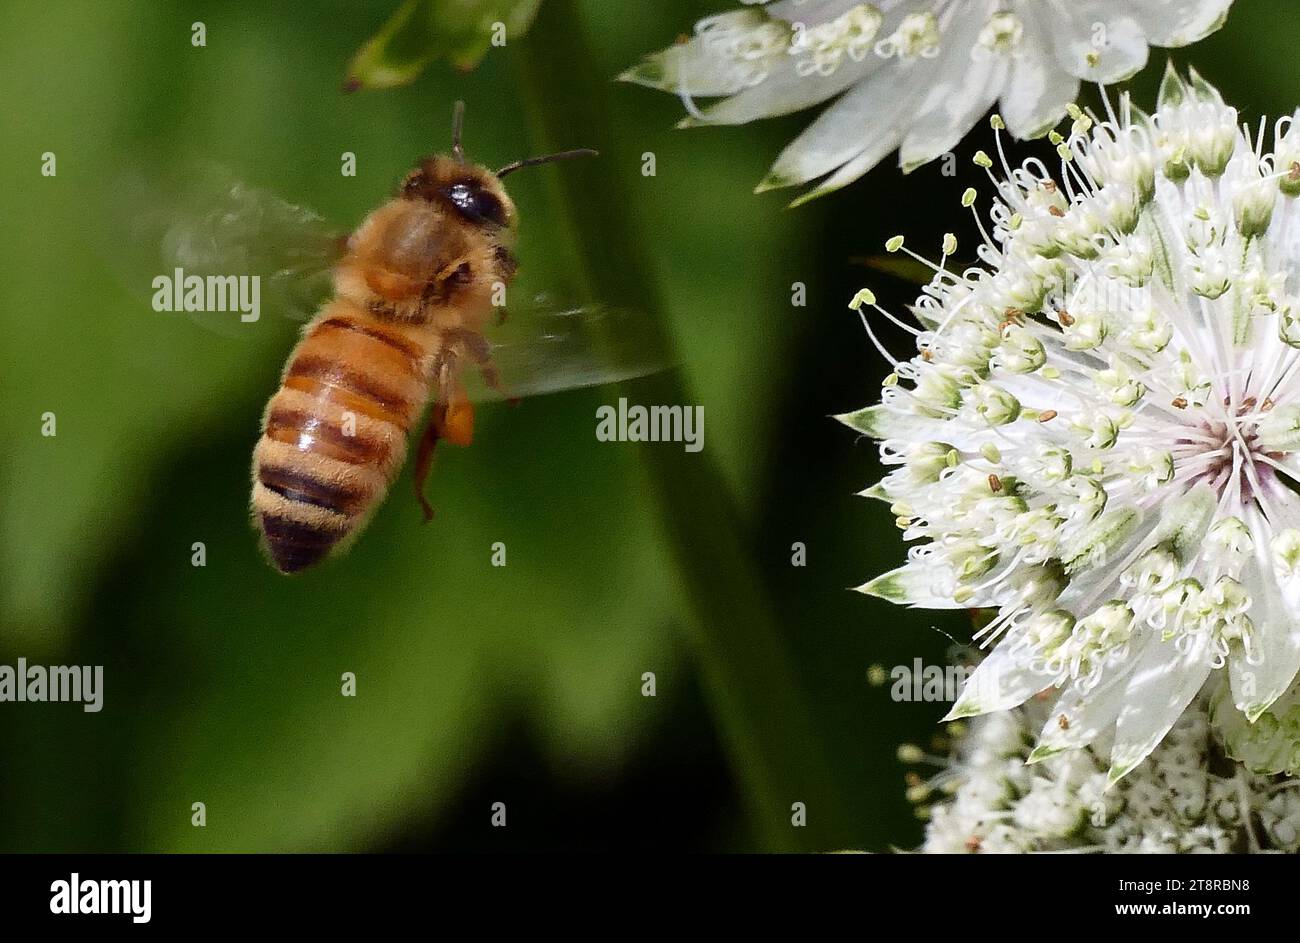 Die Bienen sind fliegende Insekten, die eng mit Wespen und Ameisen verwandt sind, die für ihre Rolle bei der Bestäubung bekannt sind, und, im Falle der bekanntesten Bienenart, der europäischen Honigbiene, für die Erzeugung von Honig und Bienenwachs. Bienen sind eine monophyletische Linie innerhalb der Superfamilie Apoidea, die heute als Clade Anthophila gilt. Es gibt fast 20.000 bekannte Bienenarten in sieben bis neun anerkannten Familien, obwohl viele nicht beschrieben sind und die tatsächliche Zahl wahrscheinlich höher ist. Sie kommen auf allen Kontinenten außer der Antarktis vor Stockfoto